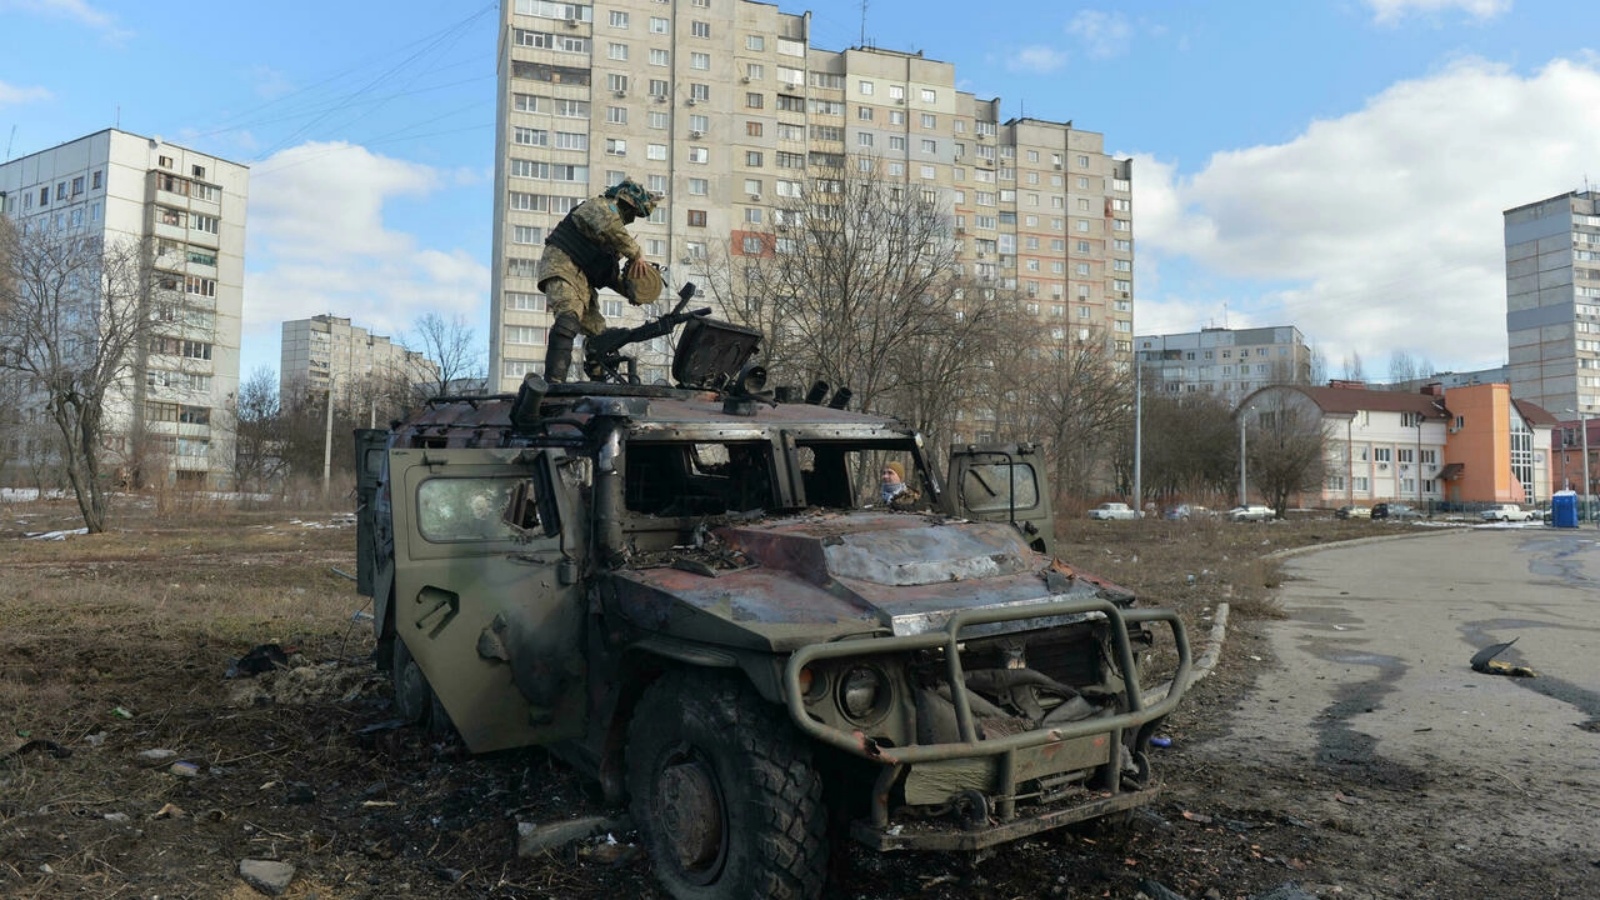 مقاتل أوكراني يتفقد آلية عسكرية روسية مدمرة بعد معارك في خاركيف (أوكرانيا) في 27 فبراير 2022